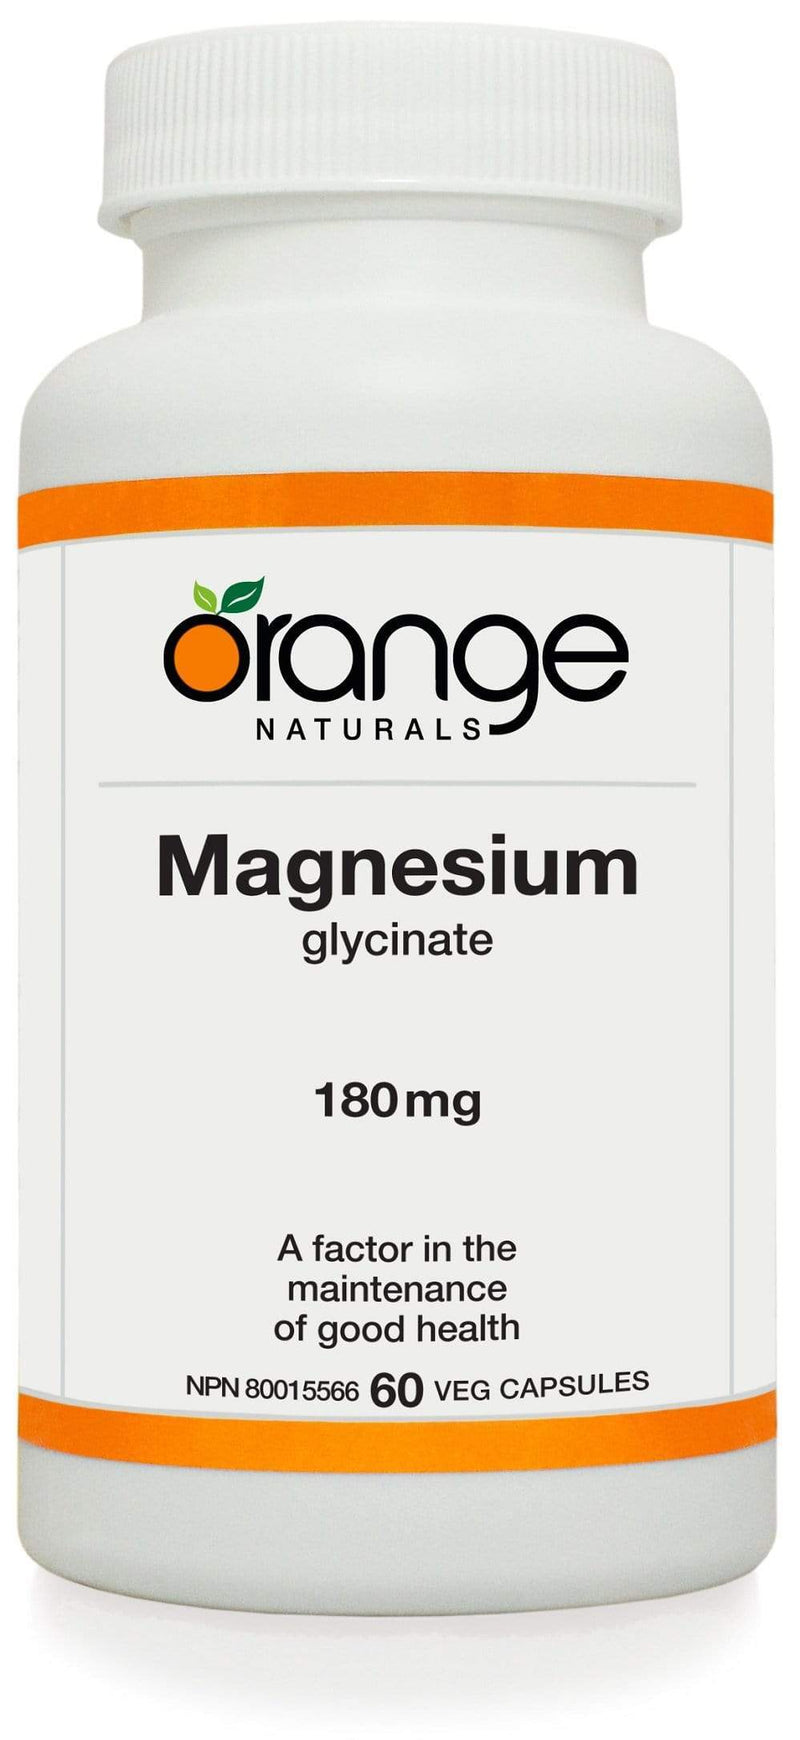 Orange Naturals Magnesium glycinate 180mg